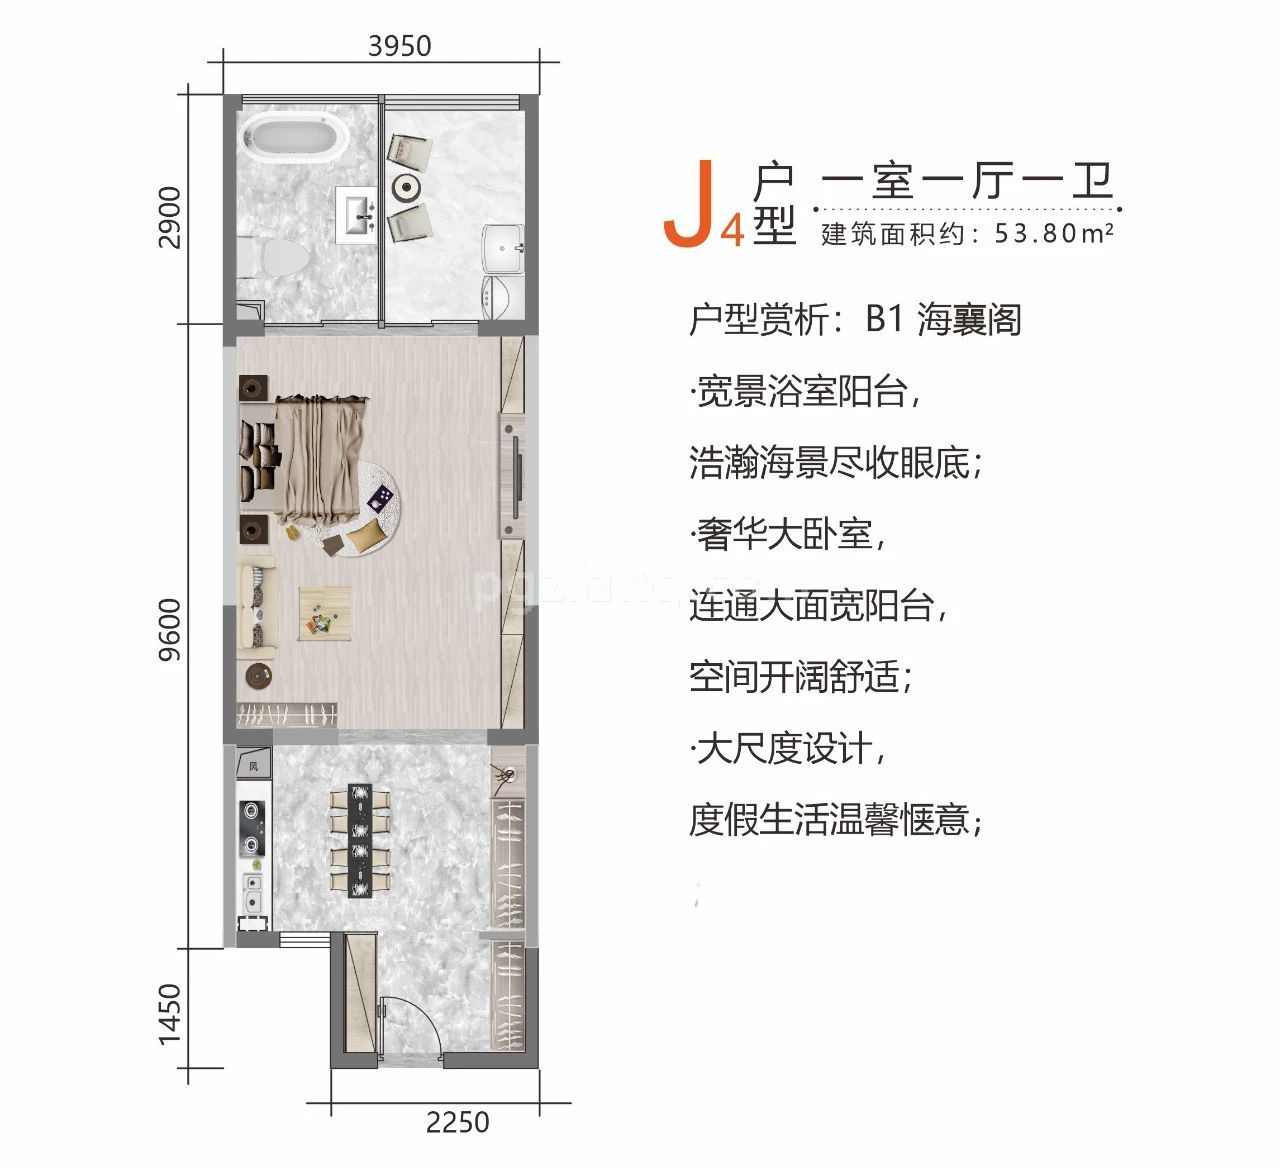 北部湾一号 高层 J4户型 一室一厅一卫 建筑面积53.8㎡